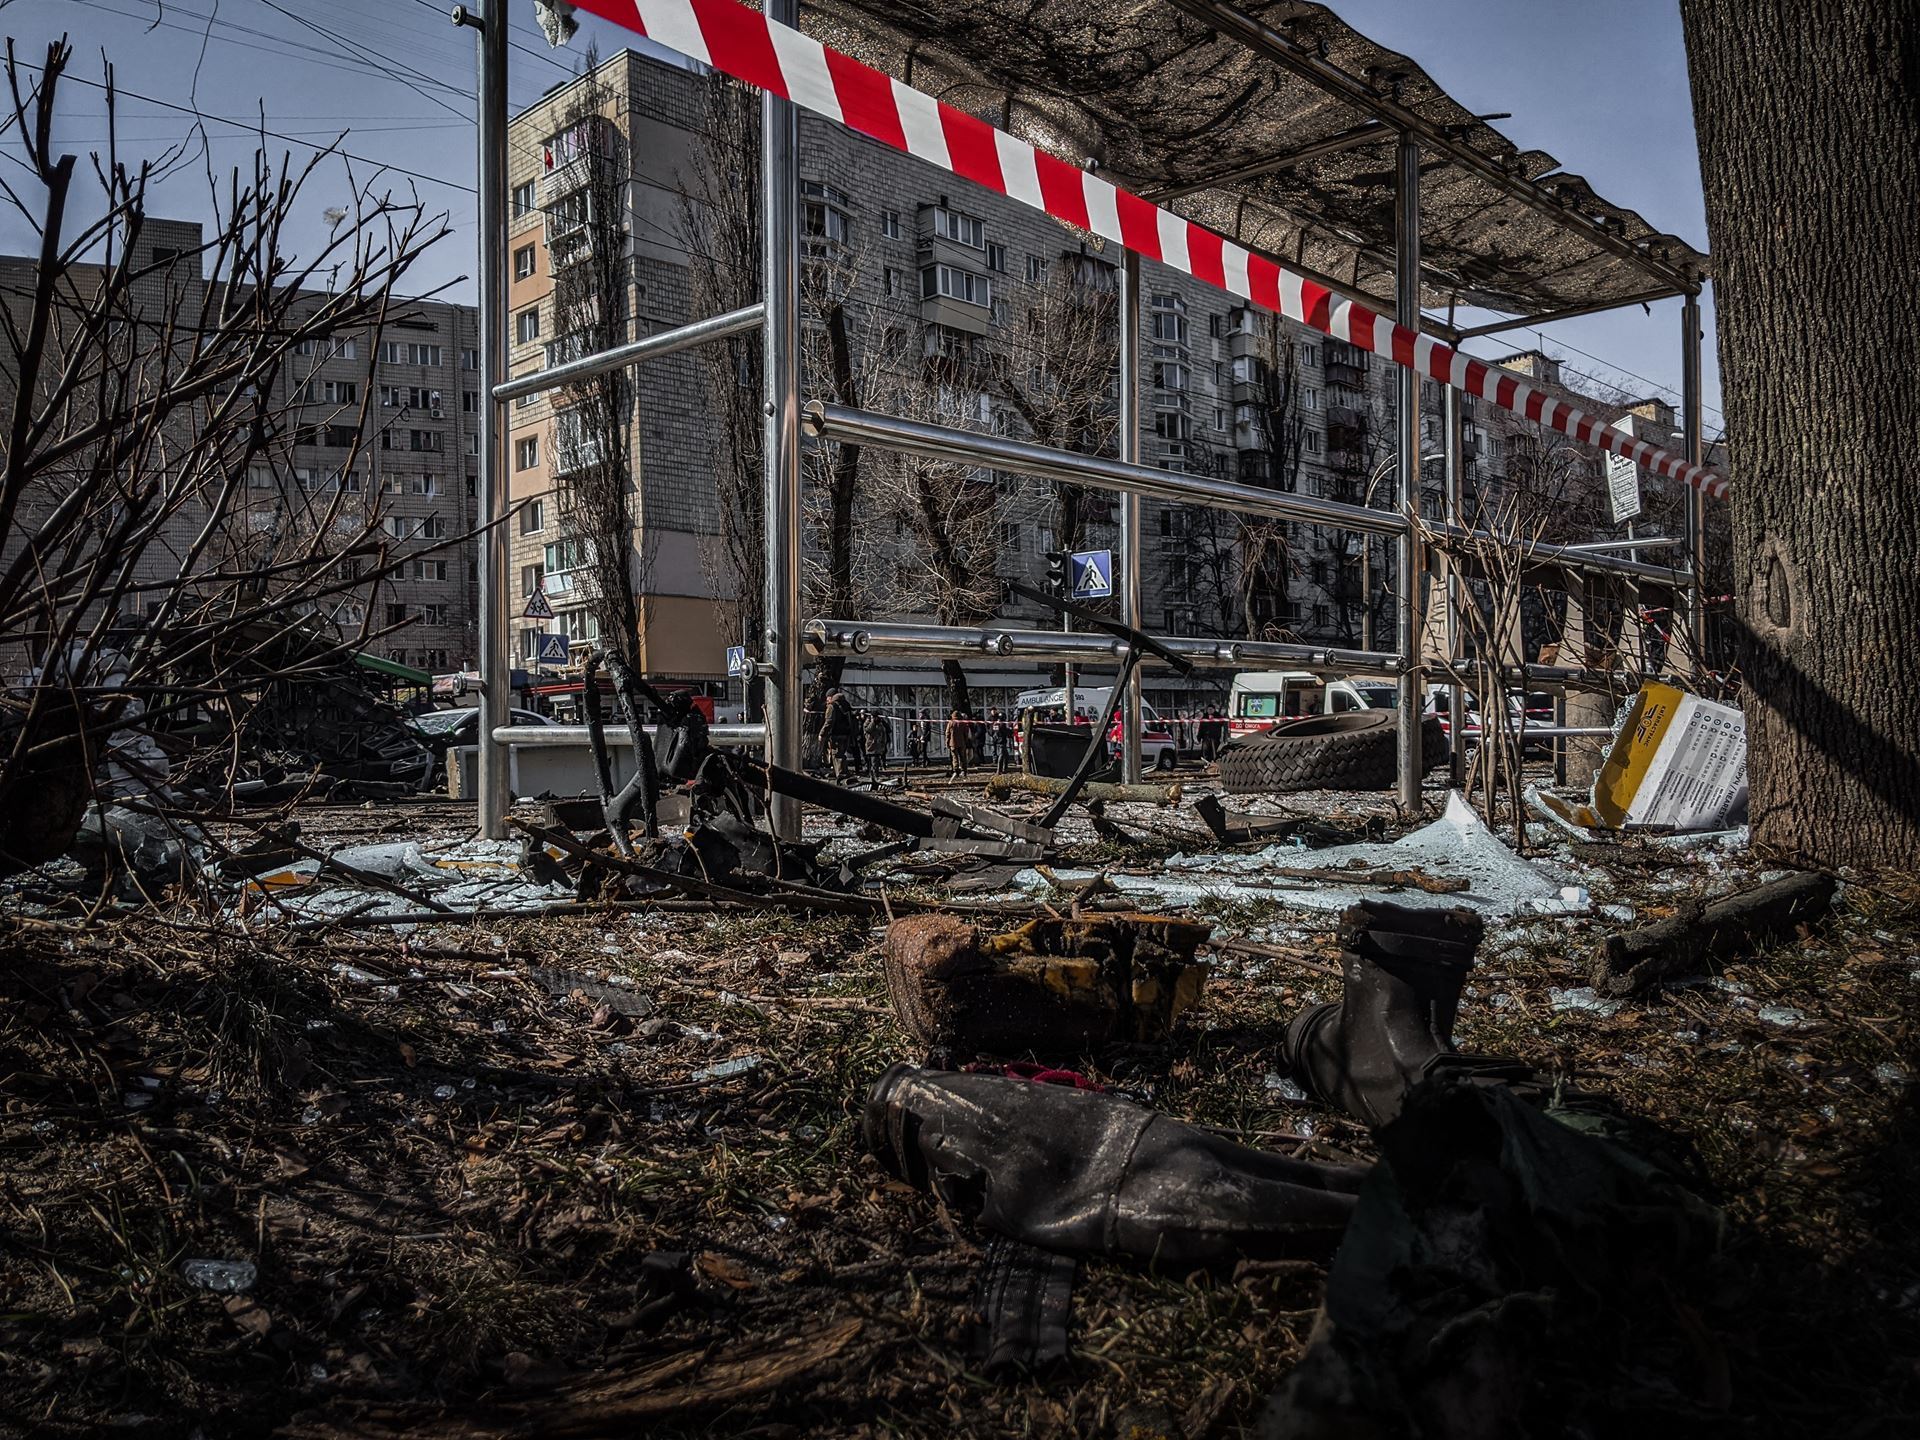 Ukraine bus stop destroyed in conflict